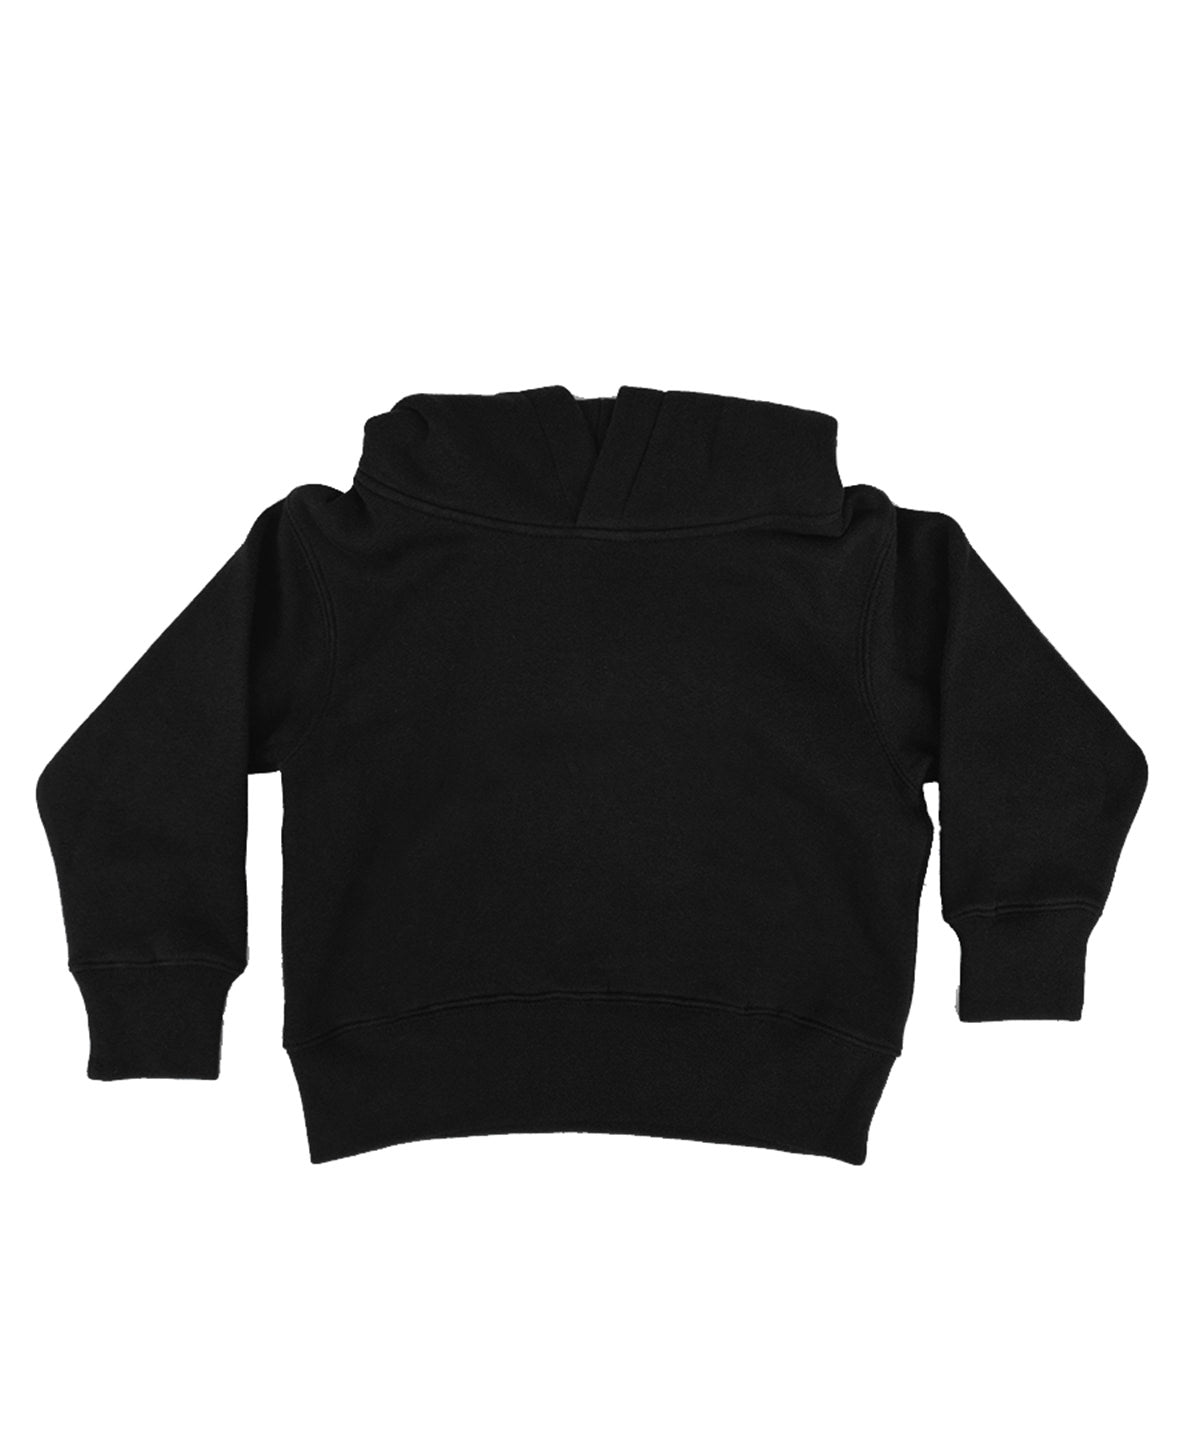 Personalised Hoodies - Black Babybugz Baby essential hoodie